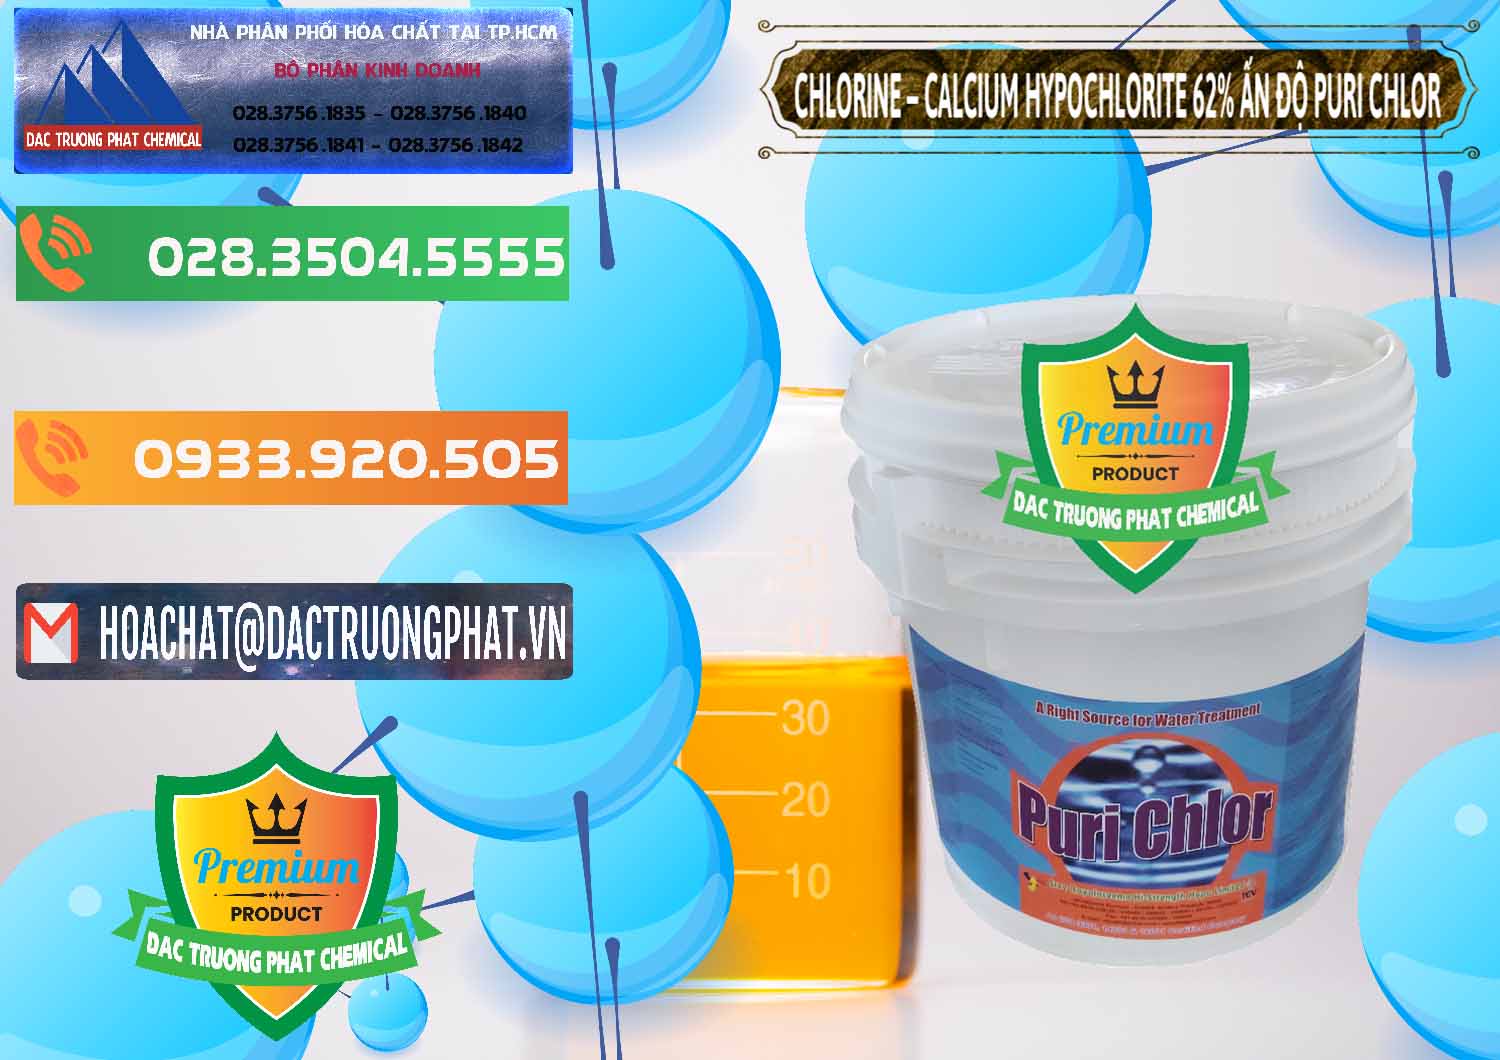 Đơn vị chuyên bán & phân phối Chlorine – Clorin 62% Puri Chlo Ấn Độ India - 0052 - Cung cấp _ bán hóa chất tại TP.HCM - hoachatxulynuoc.com.vn